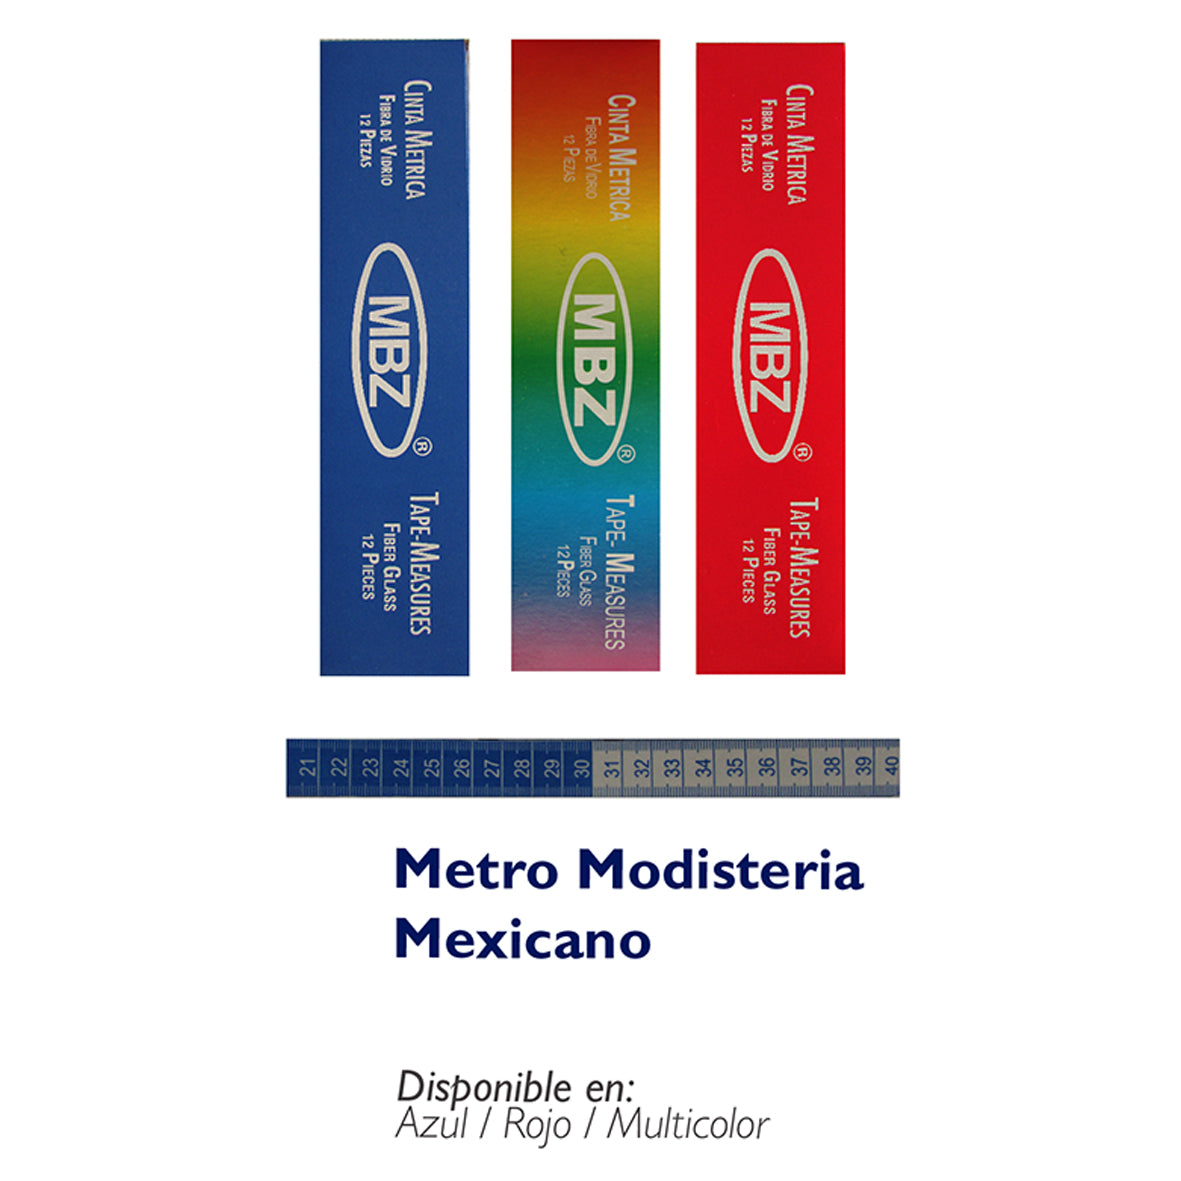 Metro Modisteria Mexicano